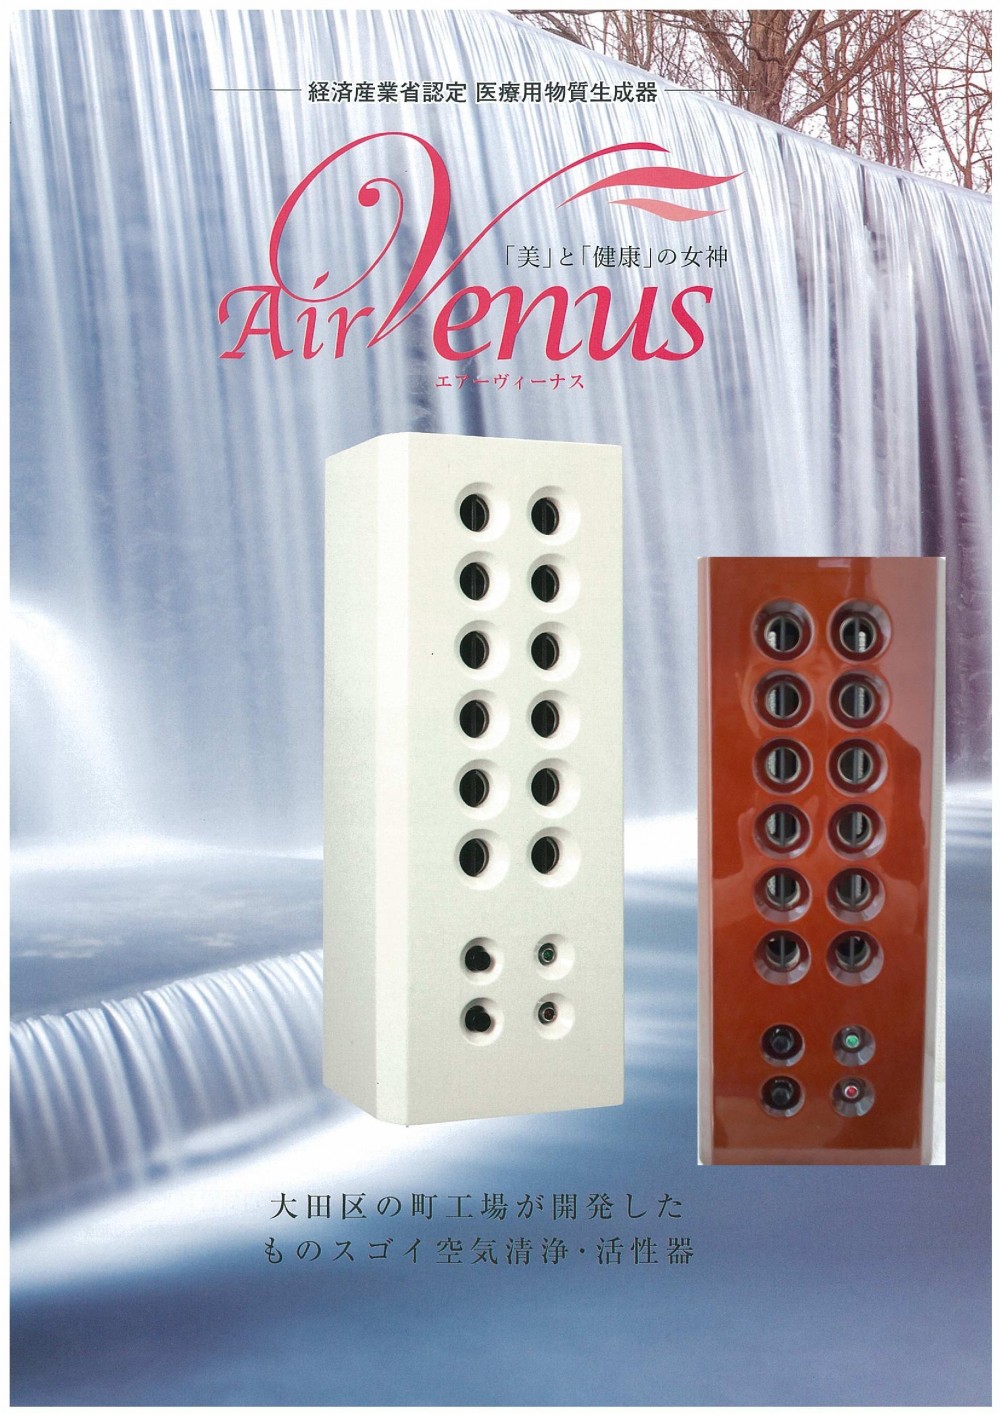 エアーヴィーナス-Air Venus- (空気活性清浄機) - 空気生成器エアー 